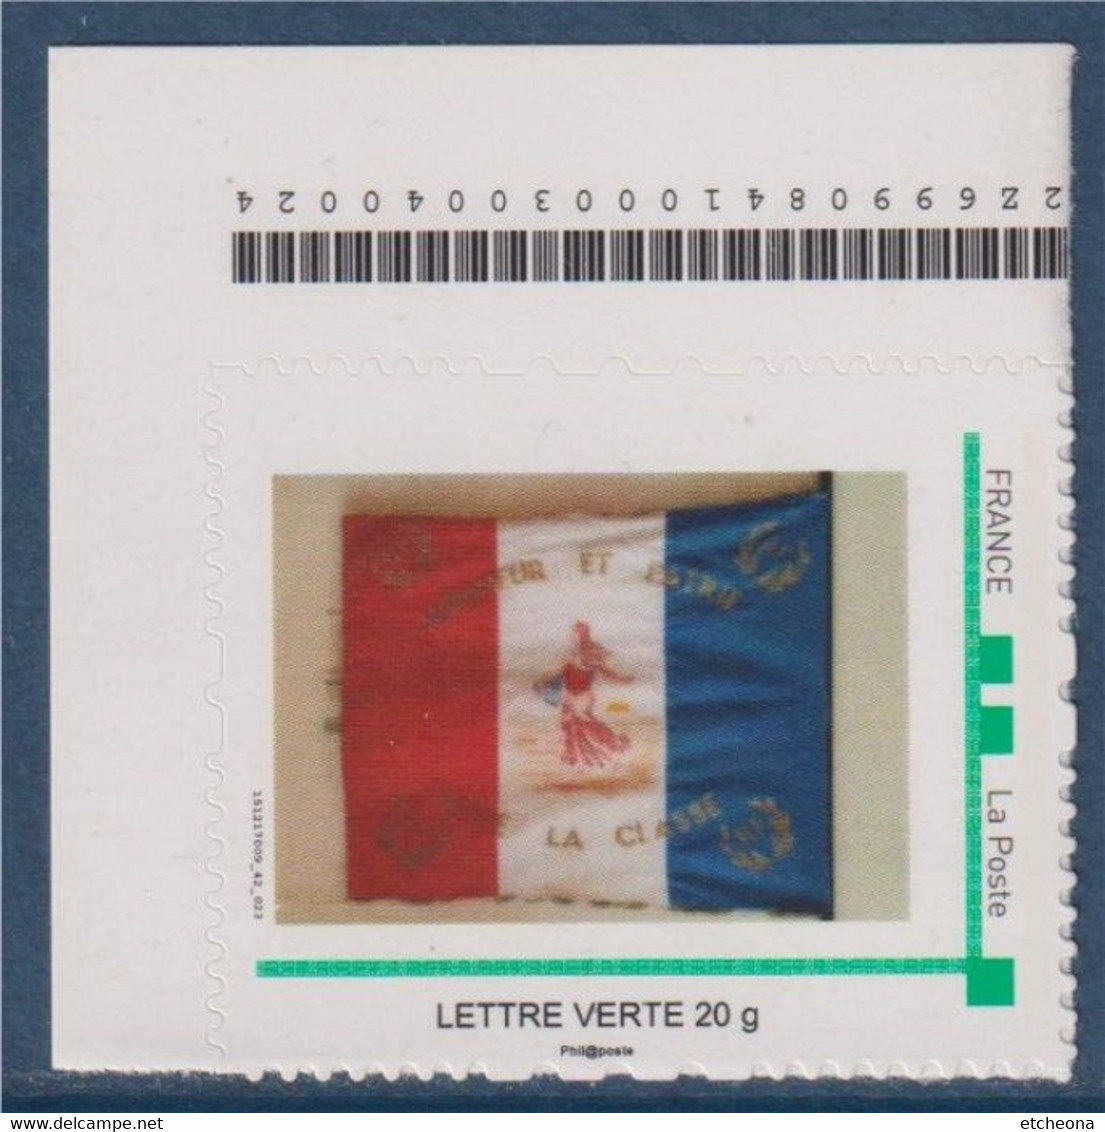 Drapeau Tricolore Français, Honneur Aux Conscrits Classe 1970 "Honneur Et Patrie Vive La Classe" LV La Semeuse - Neufs